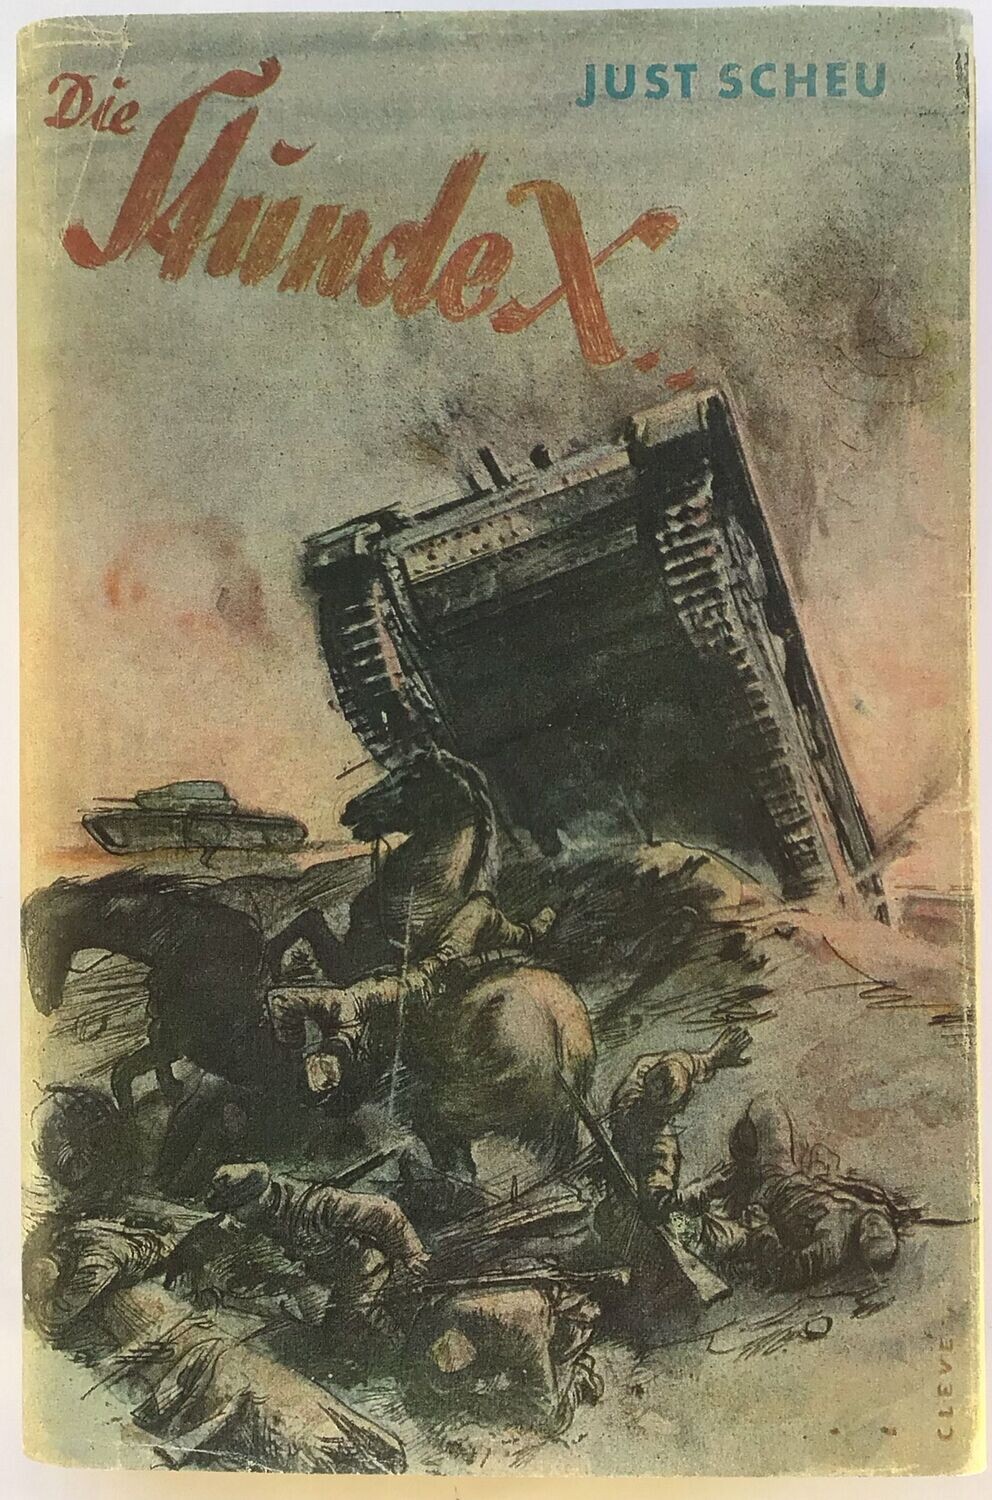 Scheu: Die Stunde X - Mit Panzern in Polen und Flandern - Ganzleinenausgabe (2. Auflage) aus 1941 mit Schutzumschlag (Farbkopie)